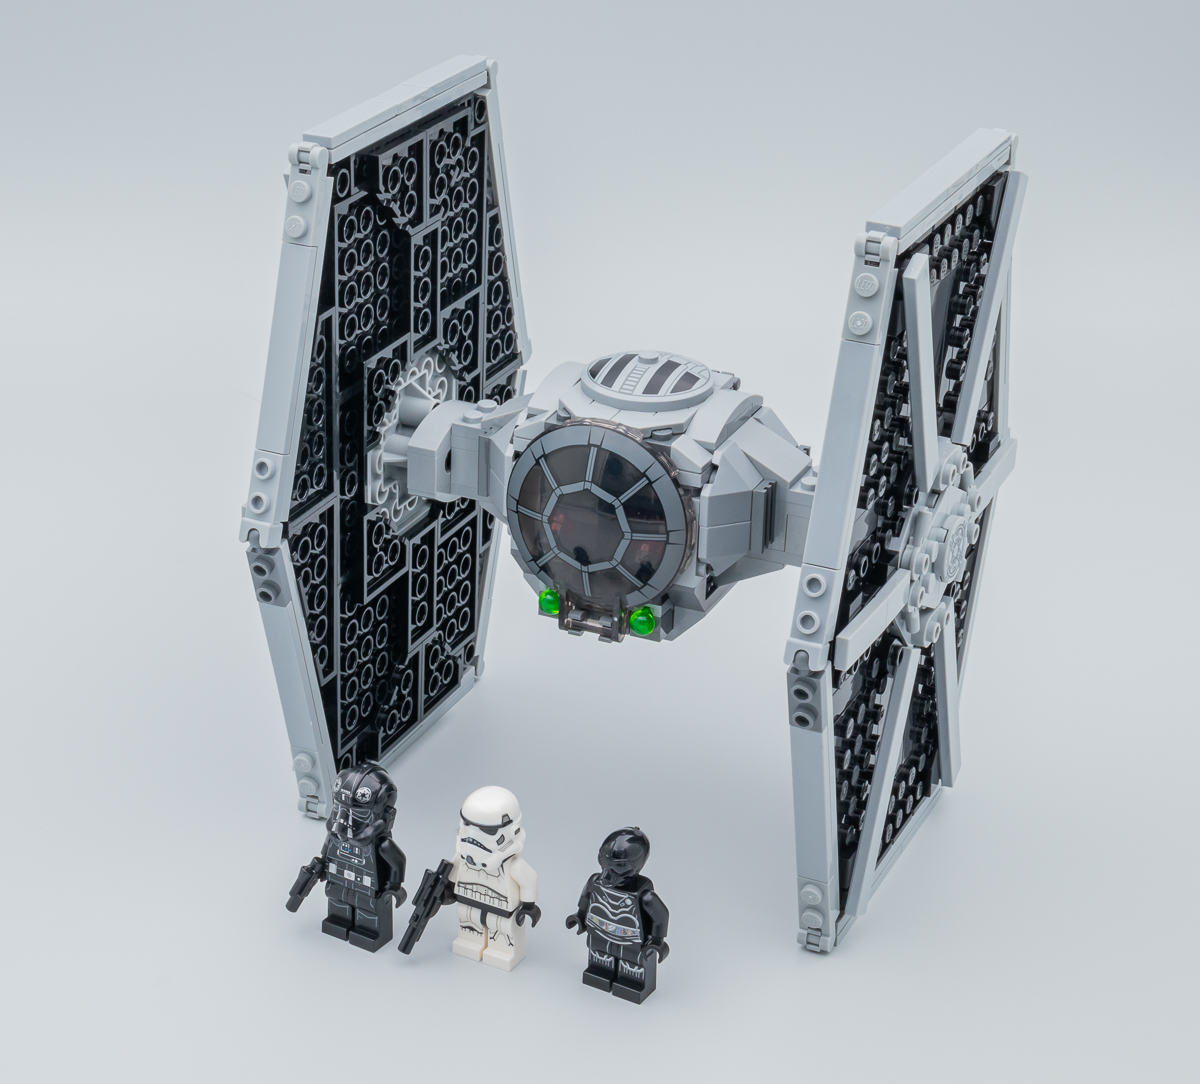 LEGO - Tie Fighter Star Wars